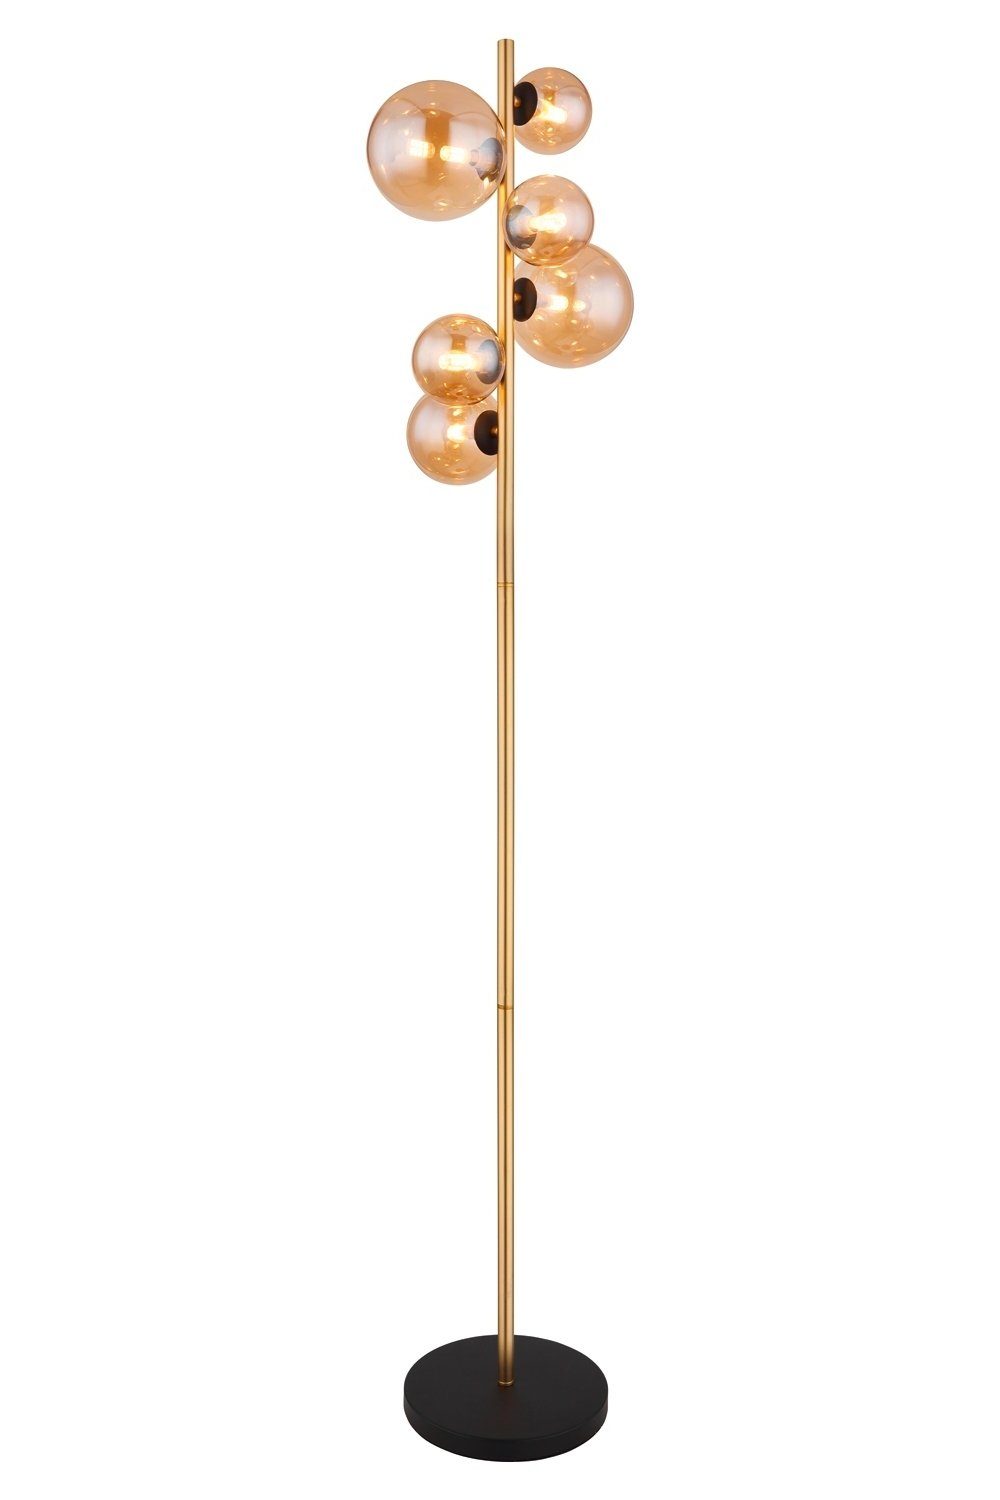 GLOBO LEUCHTEN Globo Stehlampe Stehleuchte ANTIK, 6-flammig, H 155 cm, LED wechselbar, Warmweiß, Braun, Messingfarben, Metall, Glasschirme